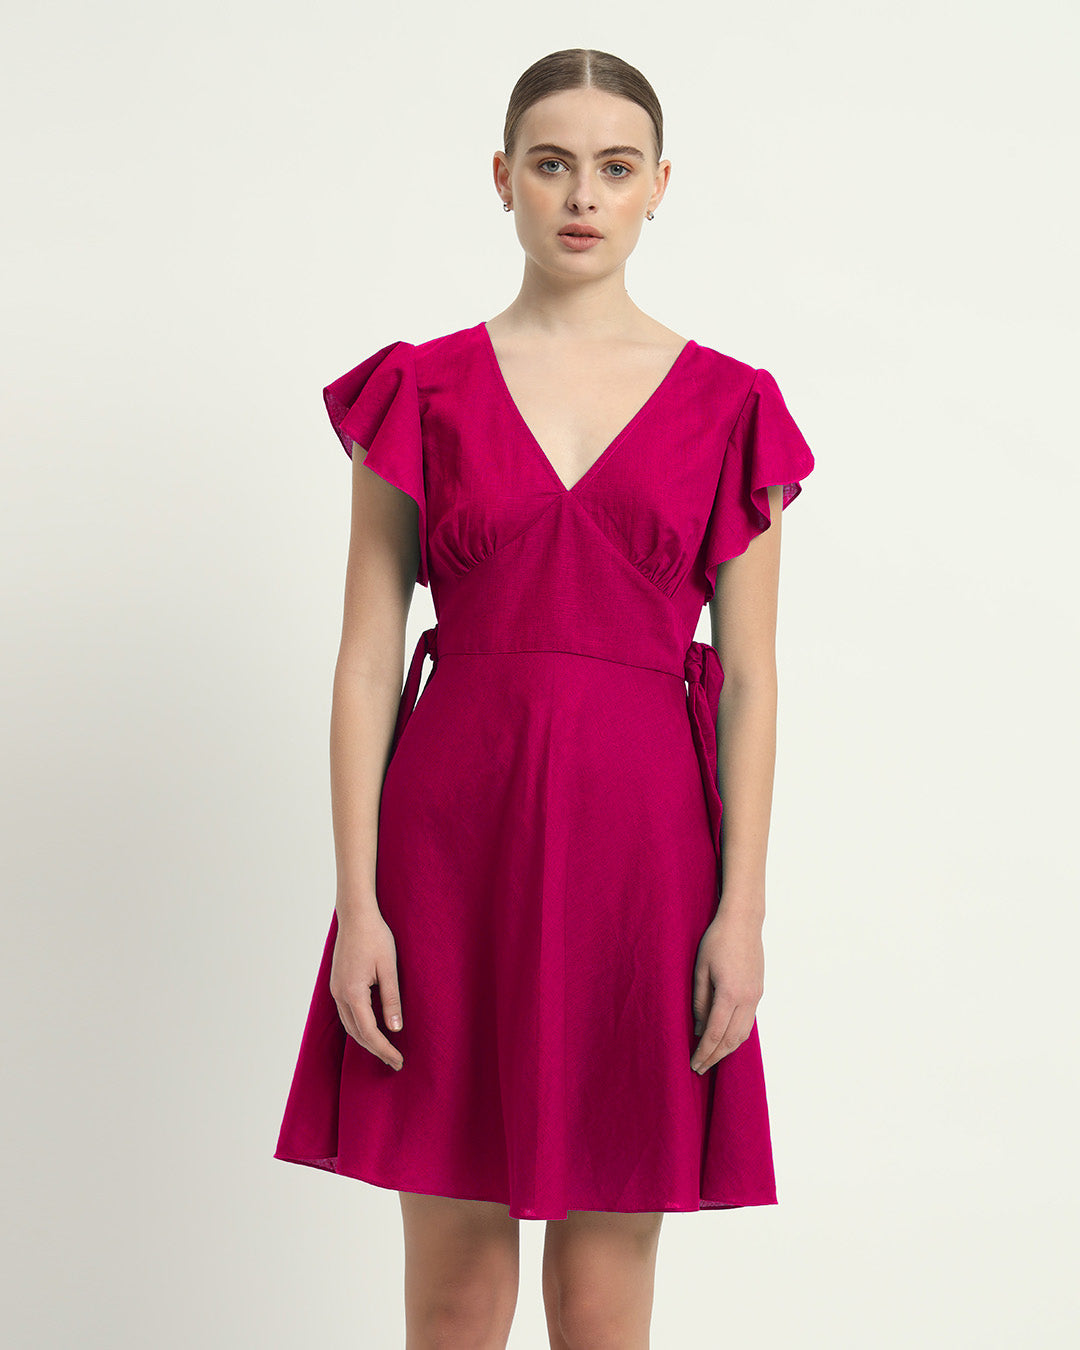 The Fairlie Berry Cotton Dress